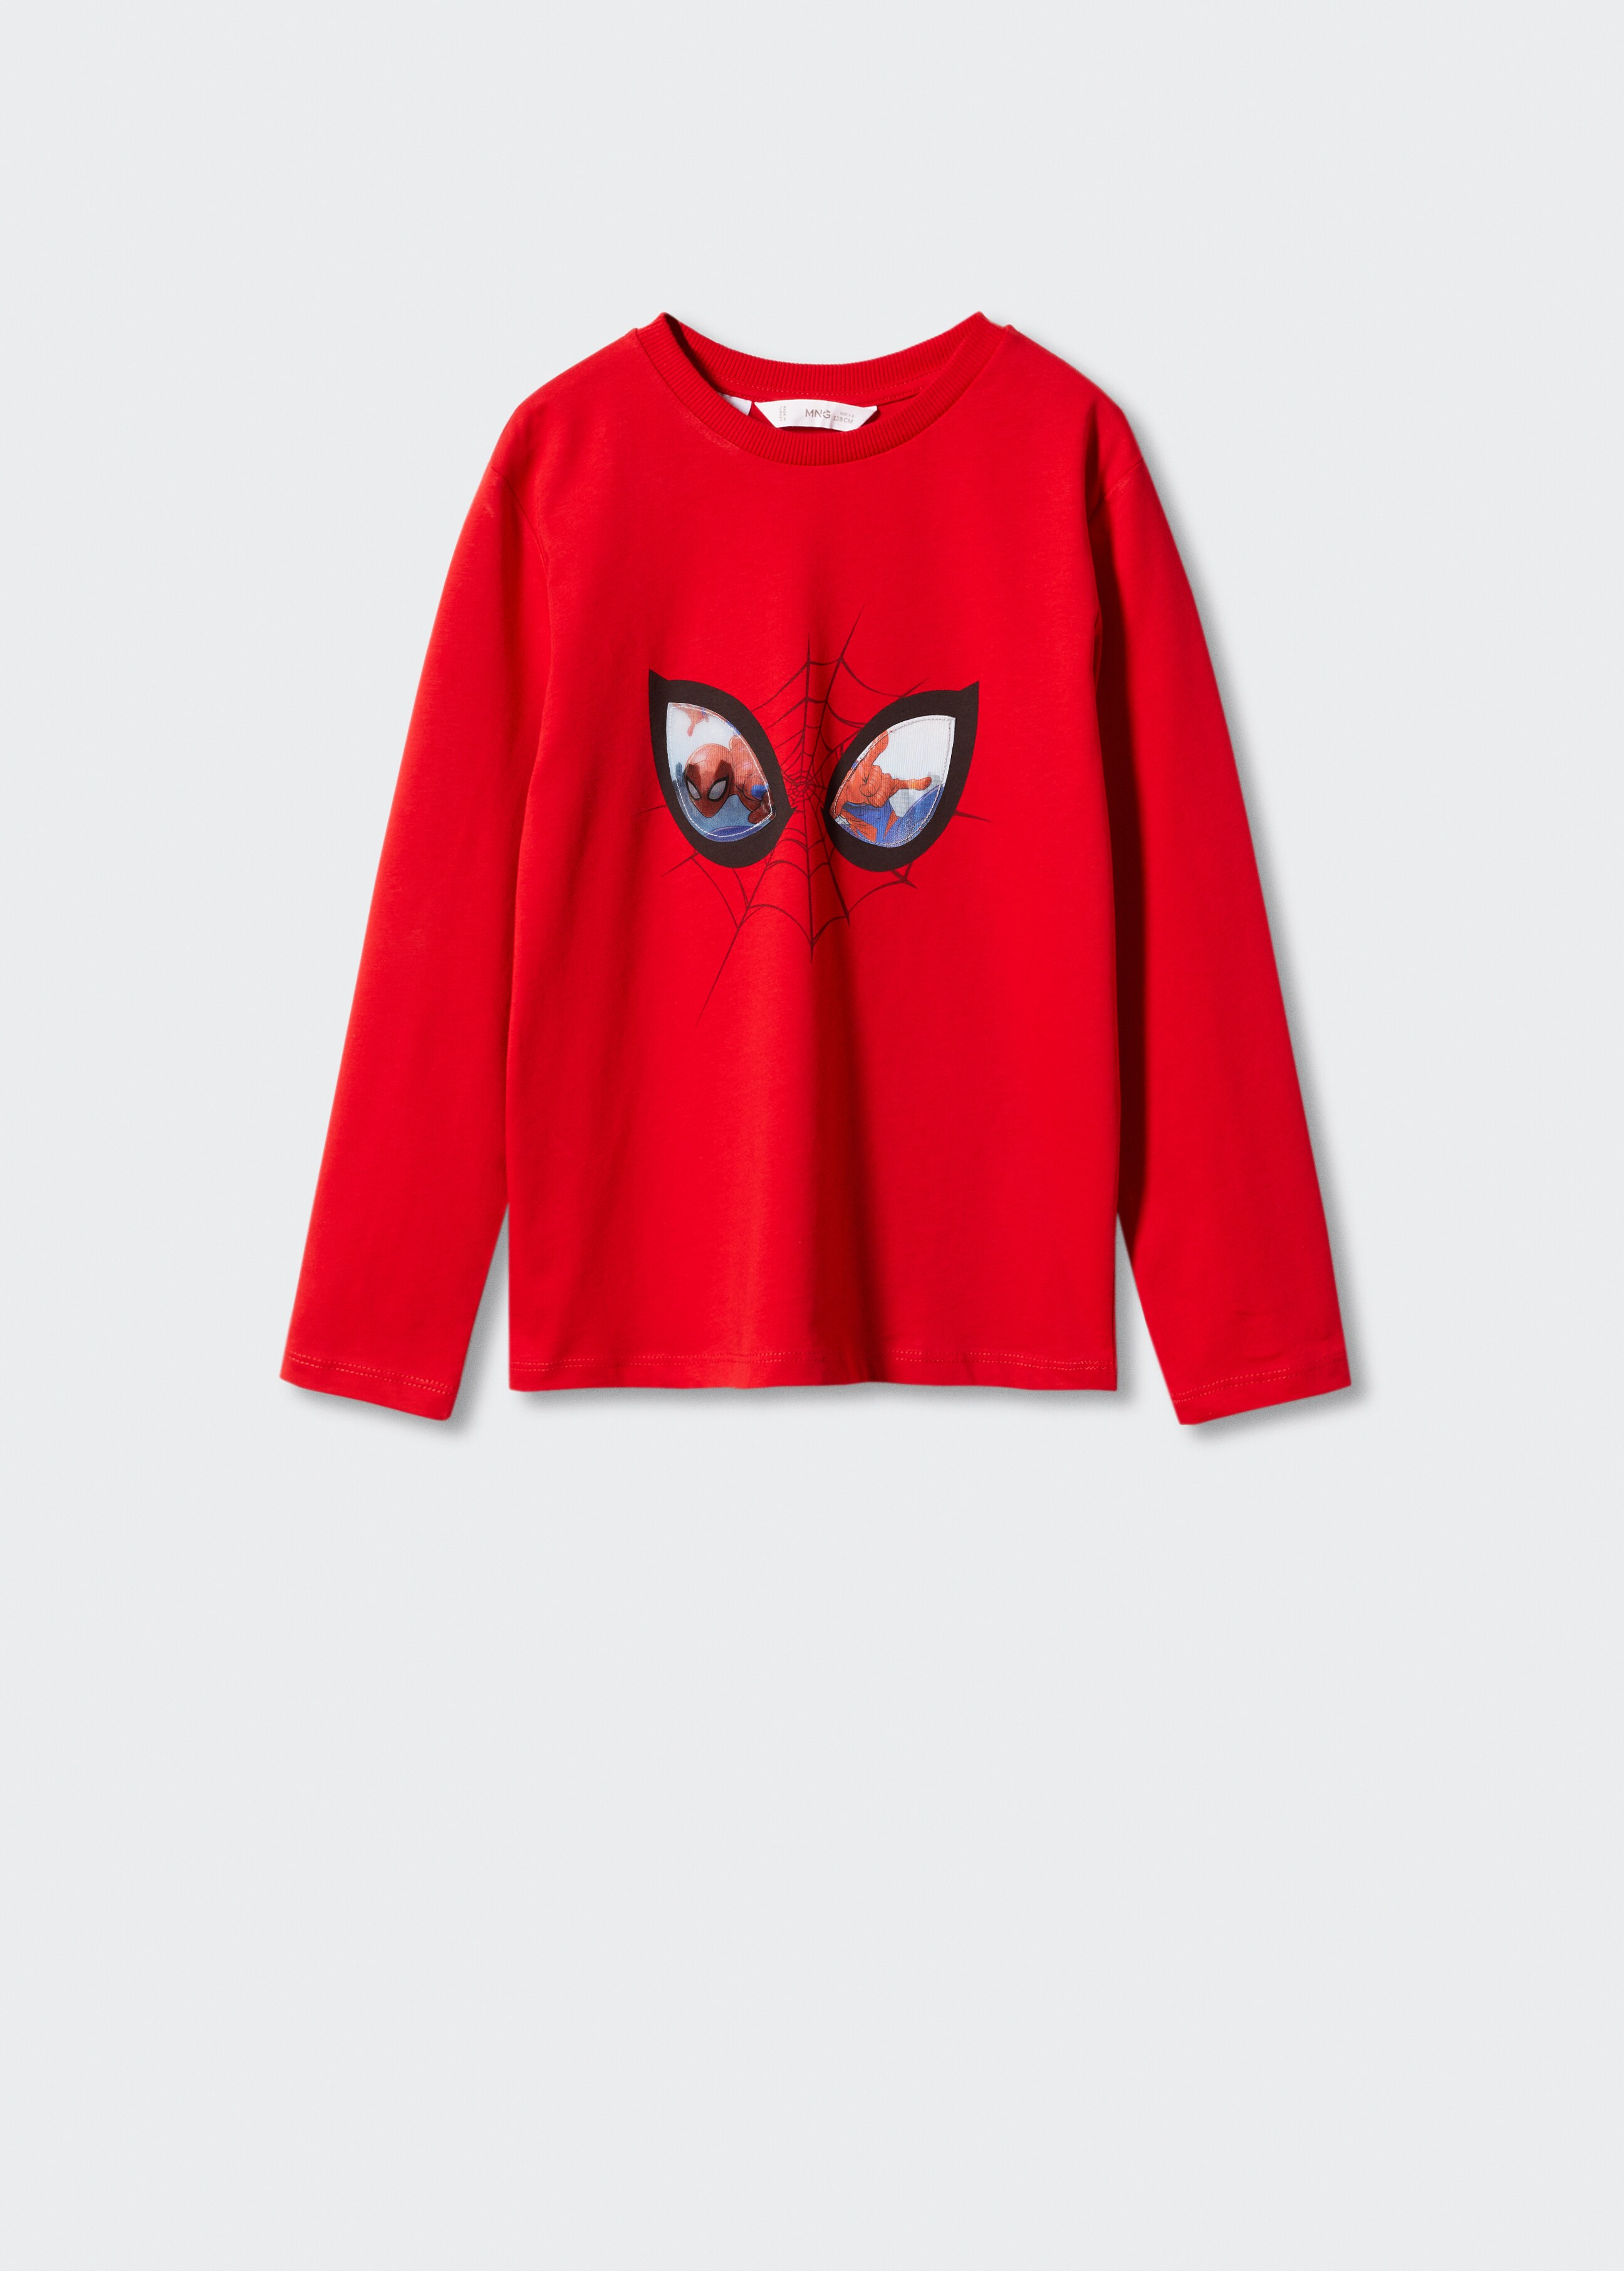 Camiseta Spider-Man - Artículo sin modelo